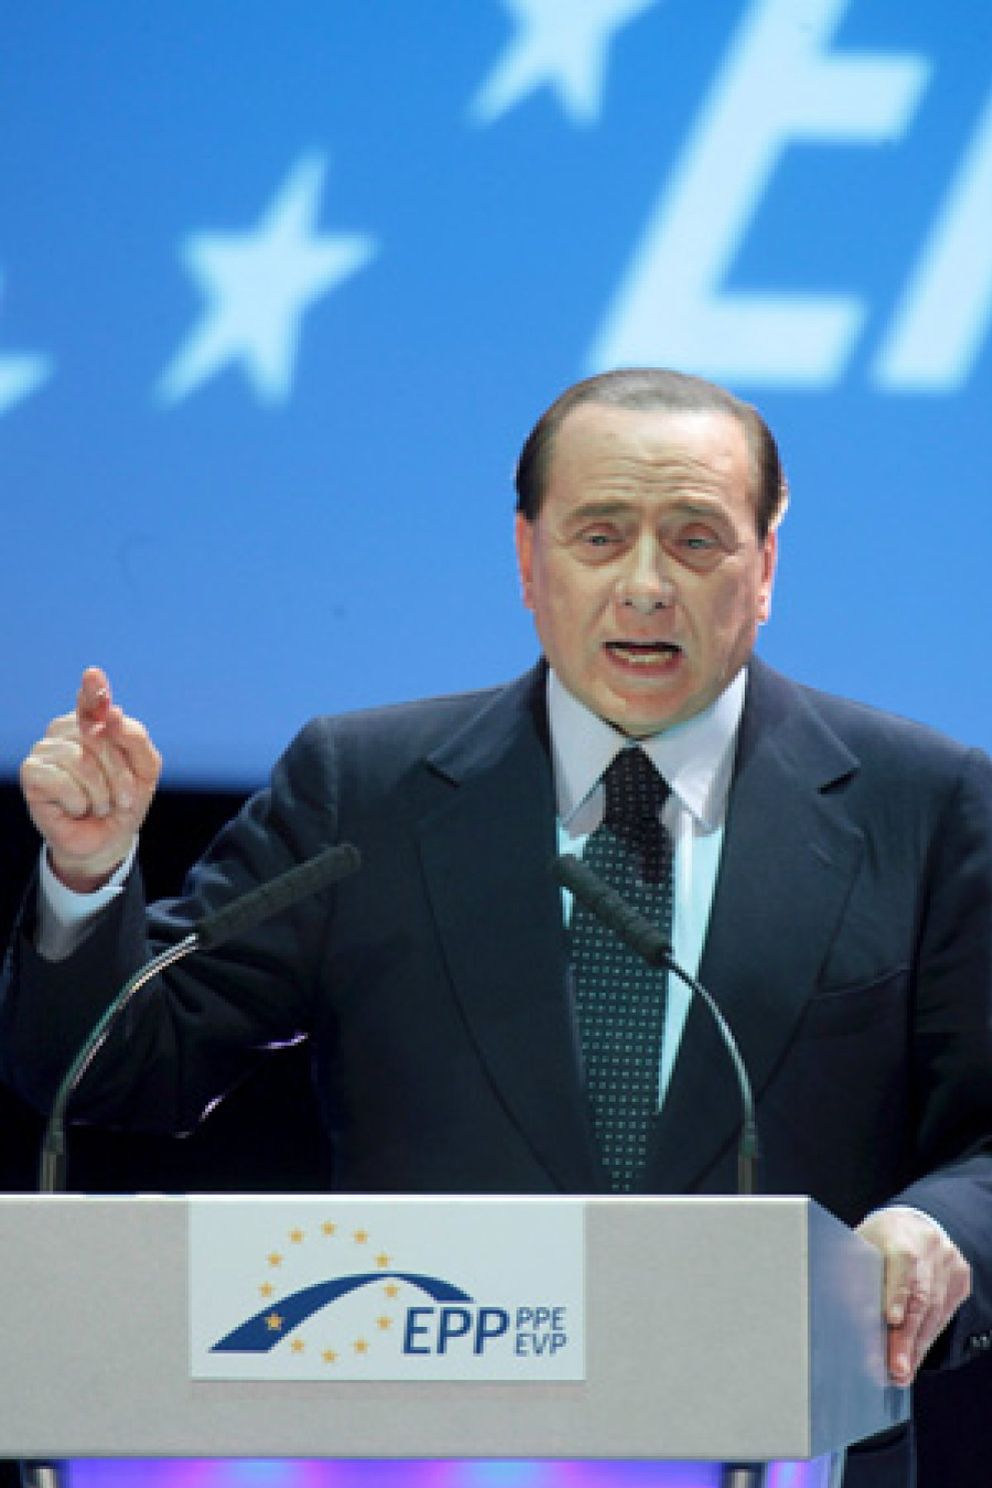 Foto: La esposa de Berlusconi prepara los trámites de su divorcio